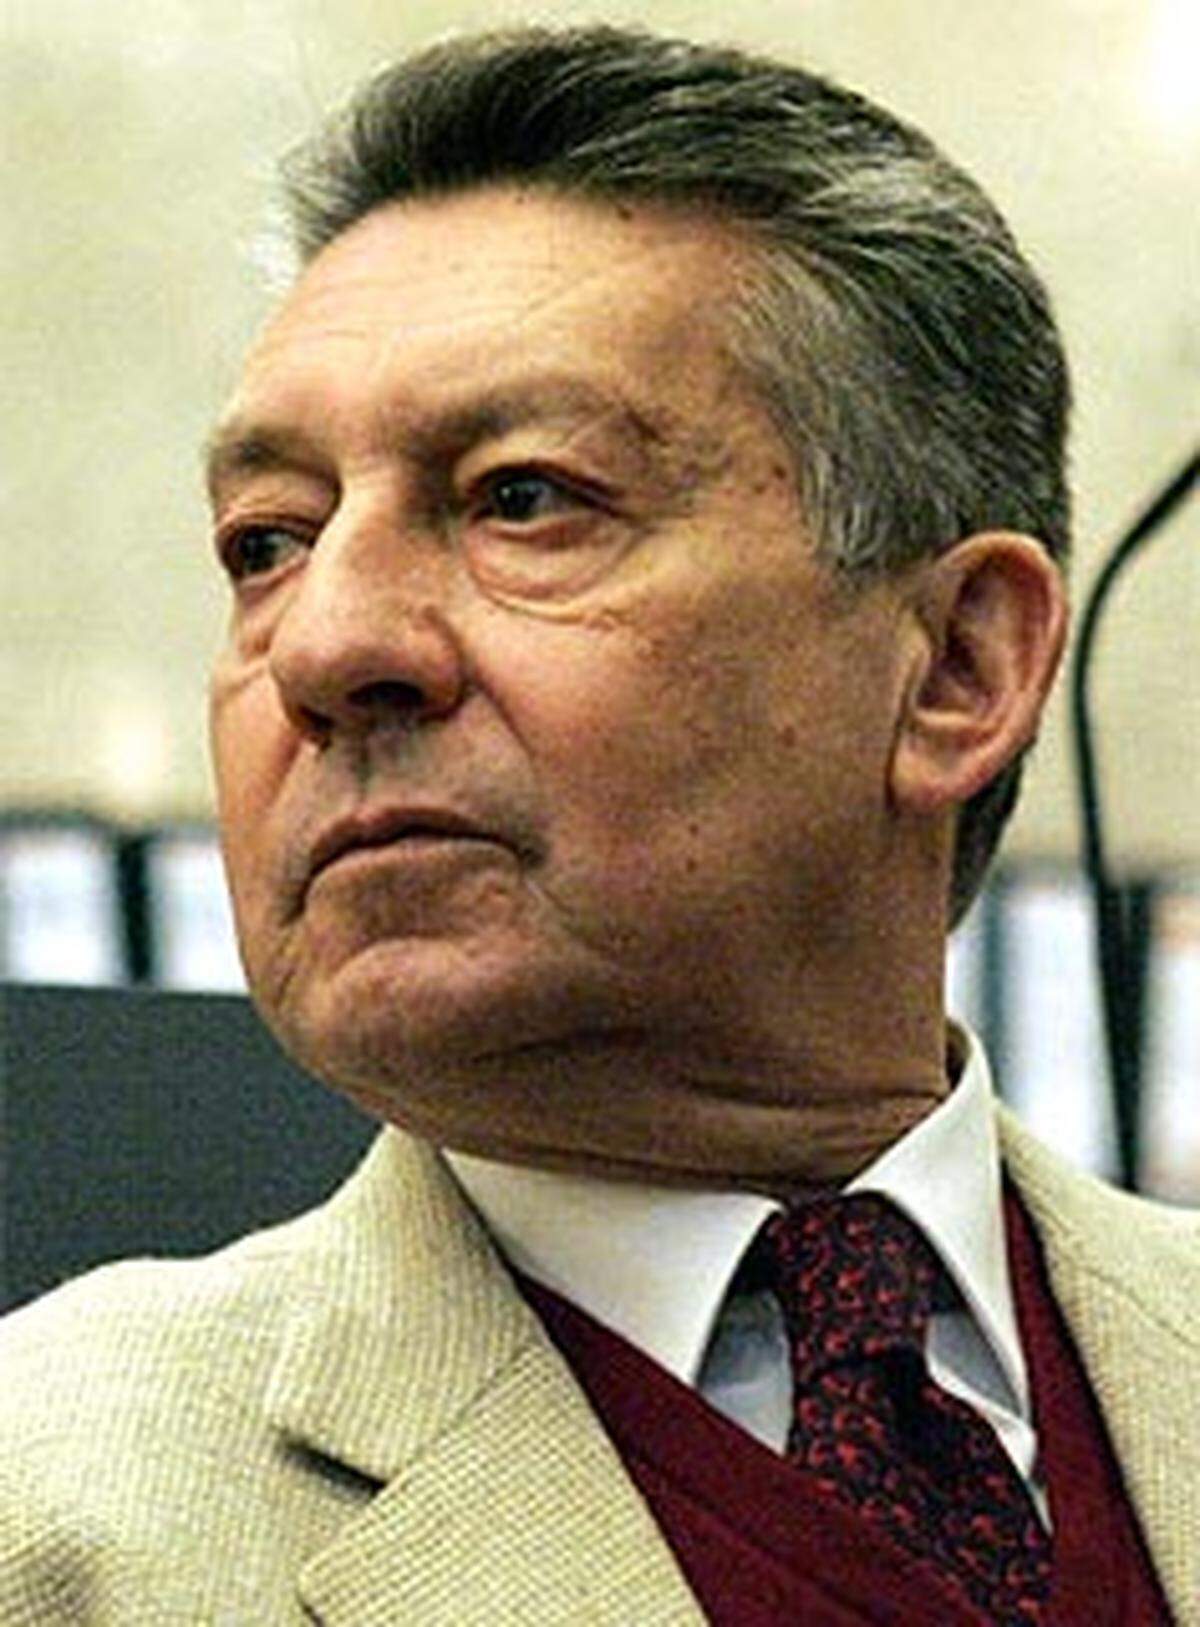 1997 gelang es Schlaff, seinen engen Freund und damaligen Bawag-Chef Helmut Elsner gemeinsam mit Casinos Austria-Generaldirektor Leo Wallner zu einem Engagement im palästinensischen Autonomiegebiet Jericho zu überreden.